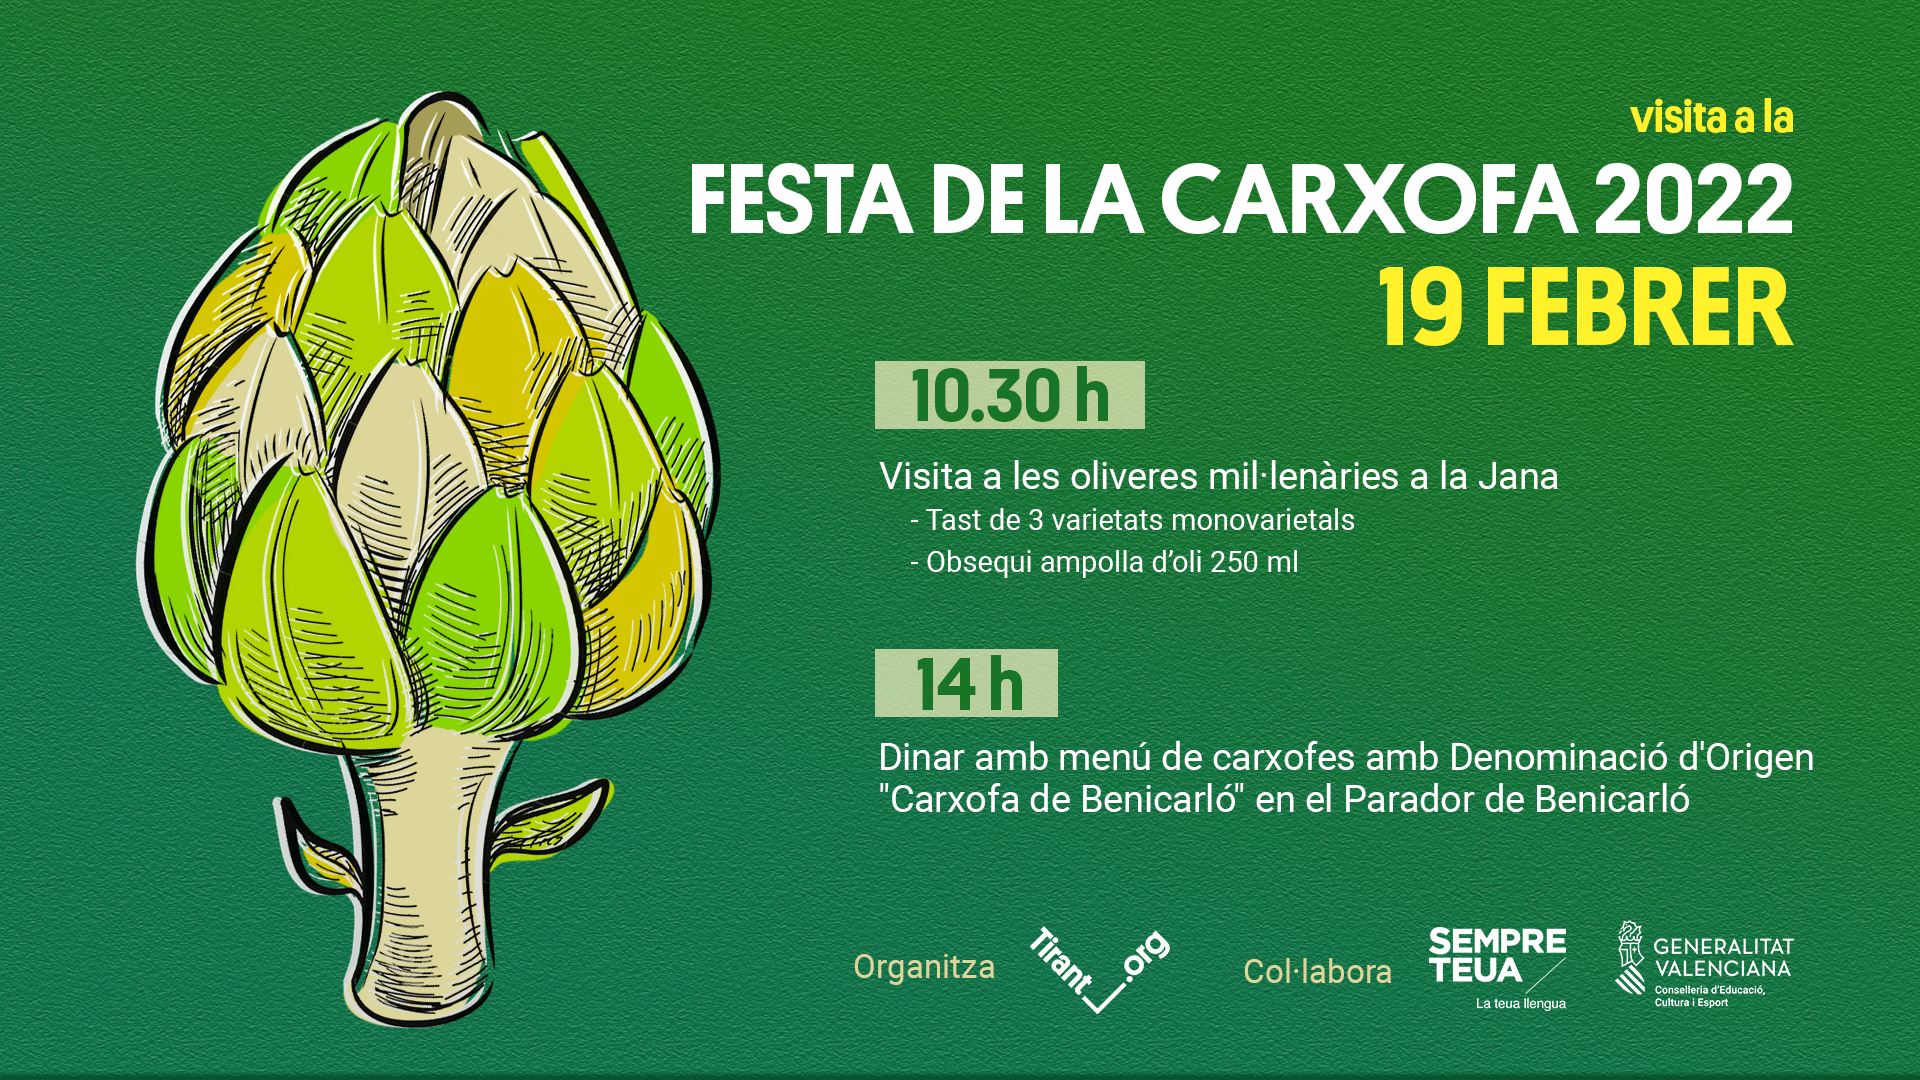 Visita a la Festa de la Carxofa 2022 a Benicarló